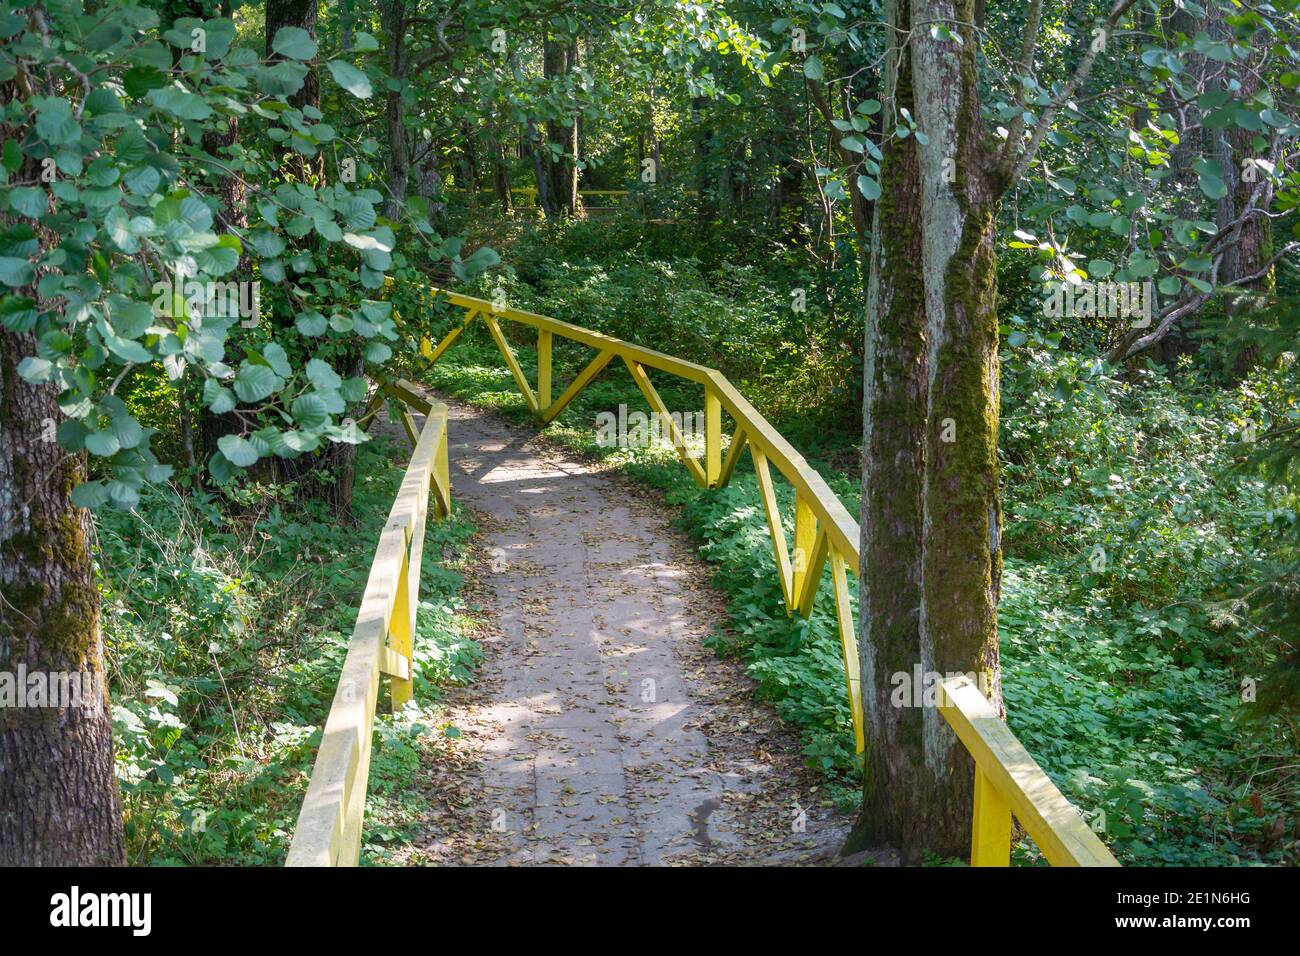 Chemin pour la marche en forêt, clôturé avec garde-corps en bois jaune. Concept d'écologie, protection des forêts. Mise au point sélective. Banque D'Images